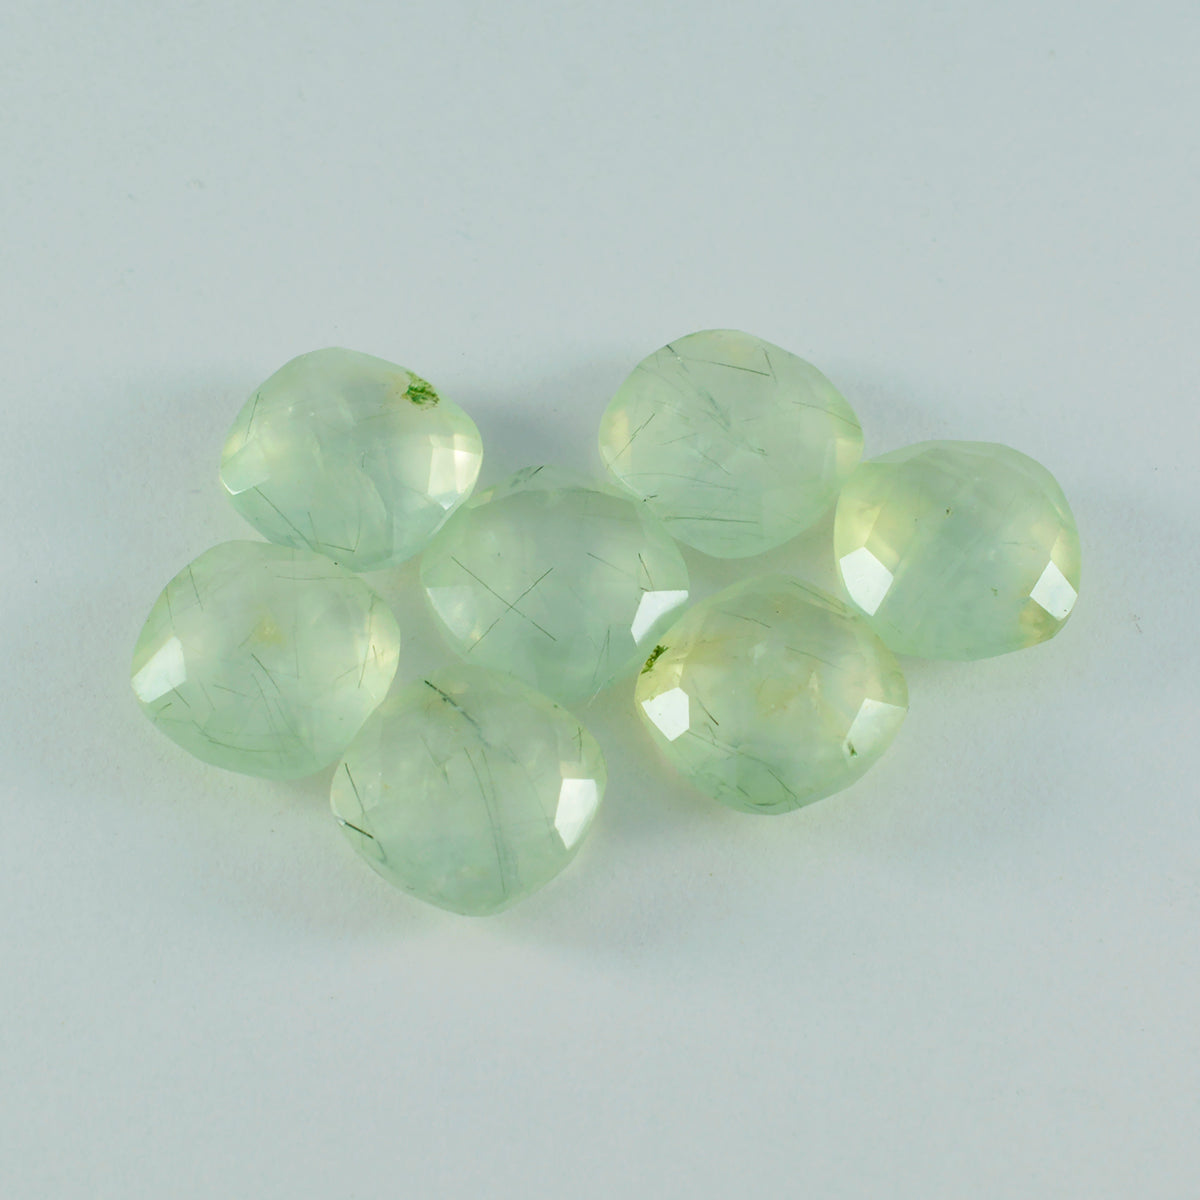 riyogems 1 pieza de prehnita verde facetada con forma de cojín de 8x8 mm, piedra preciosa de buena calidad